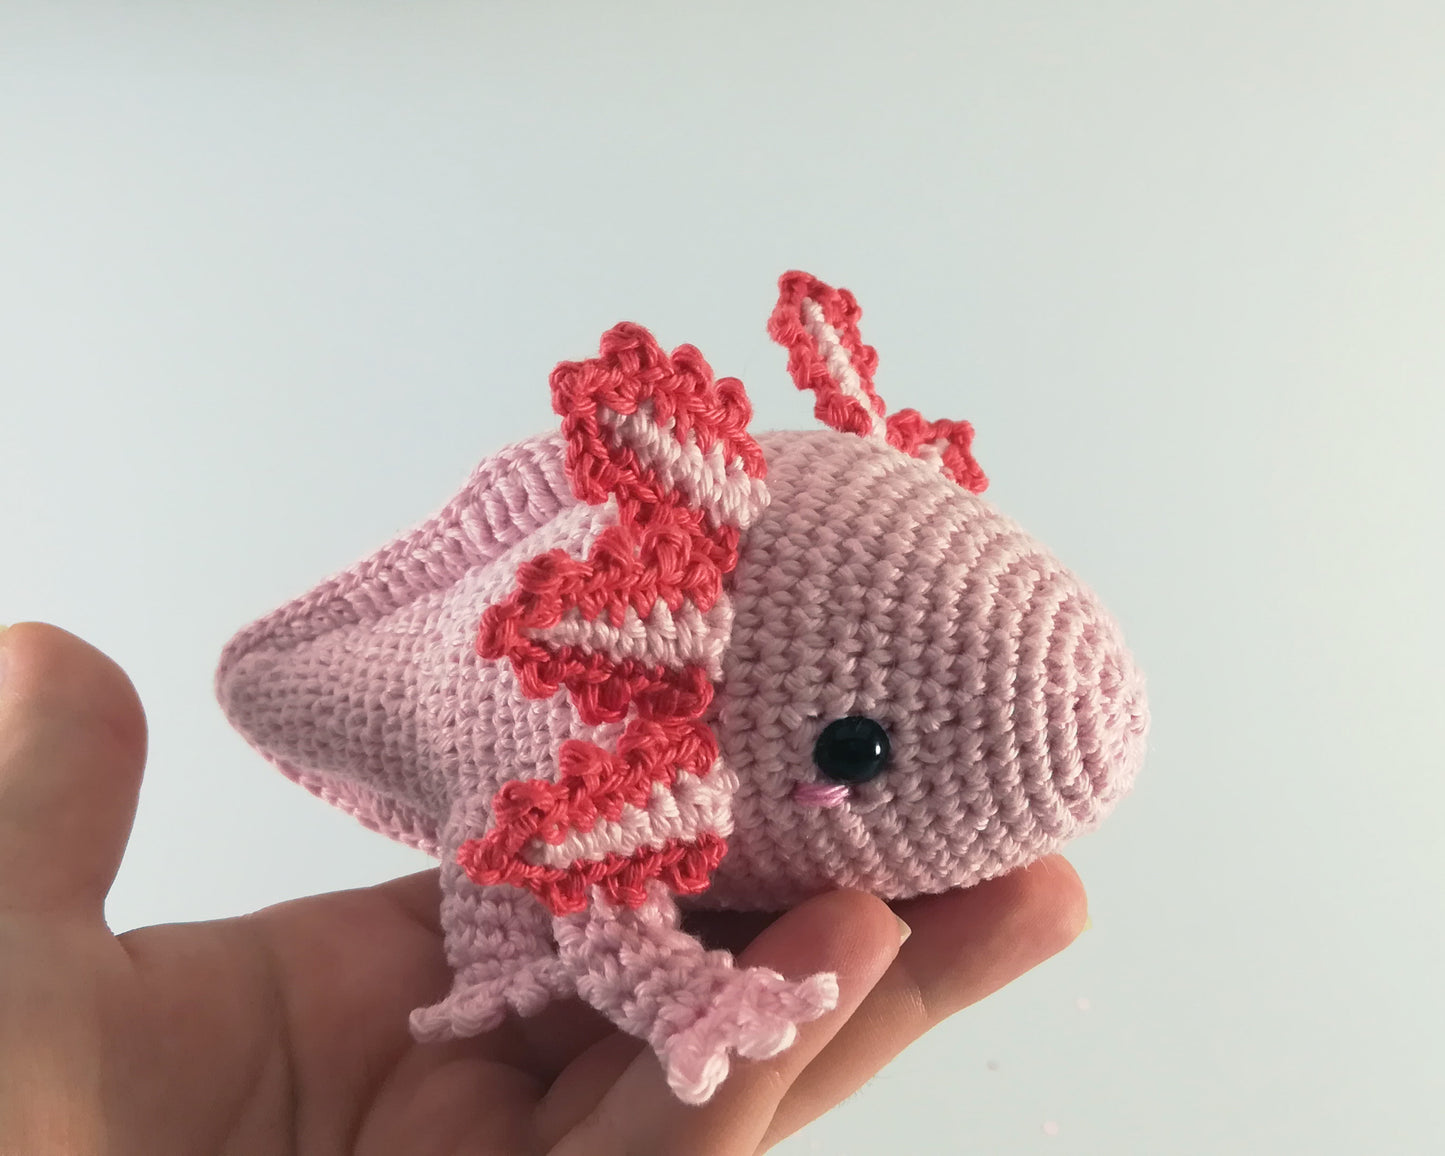 Axolotl patron crochet